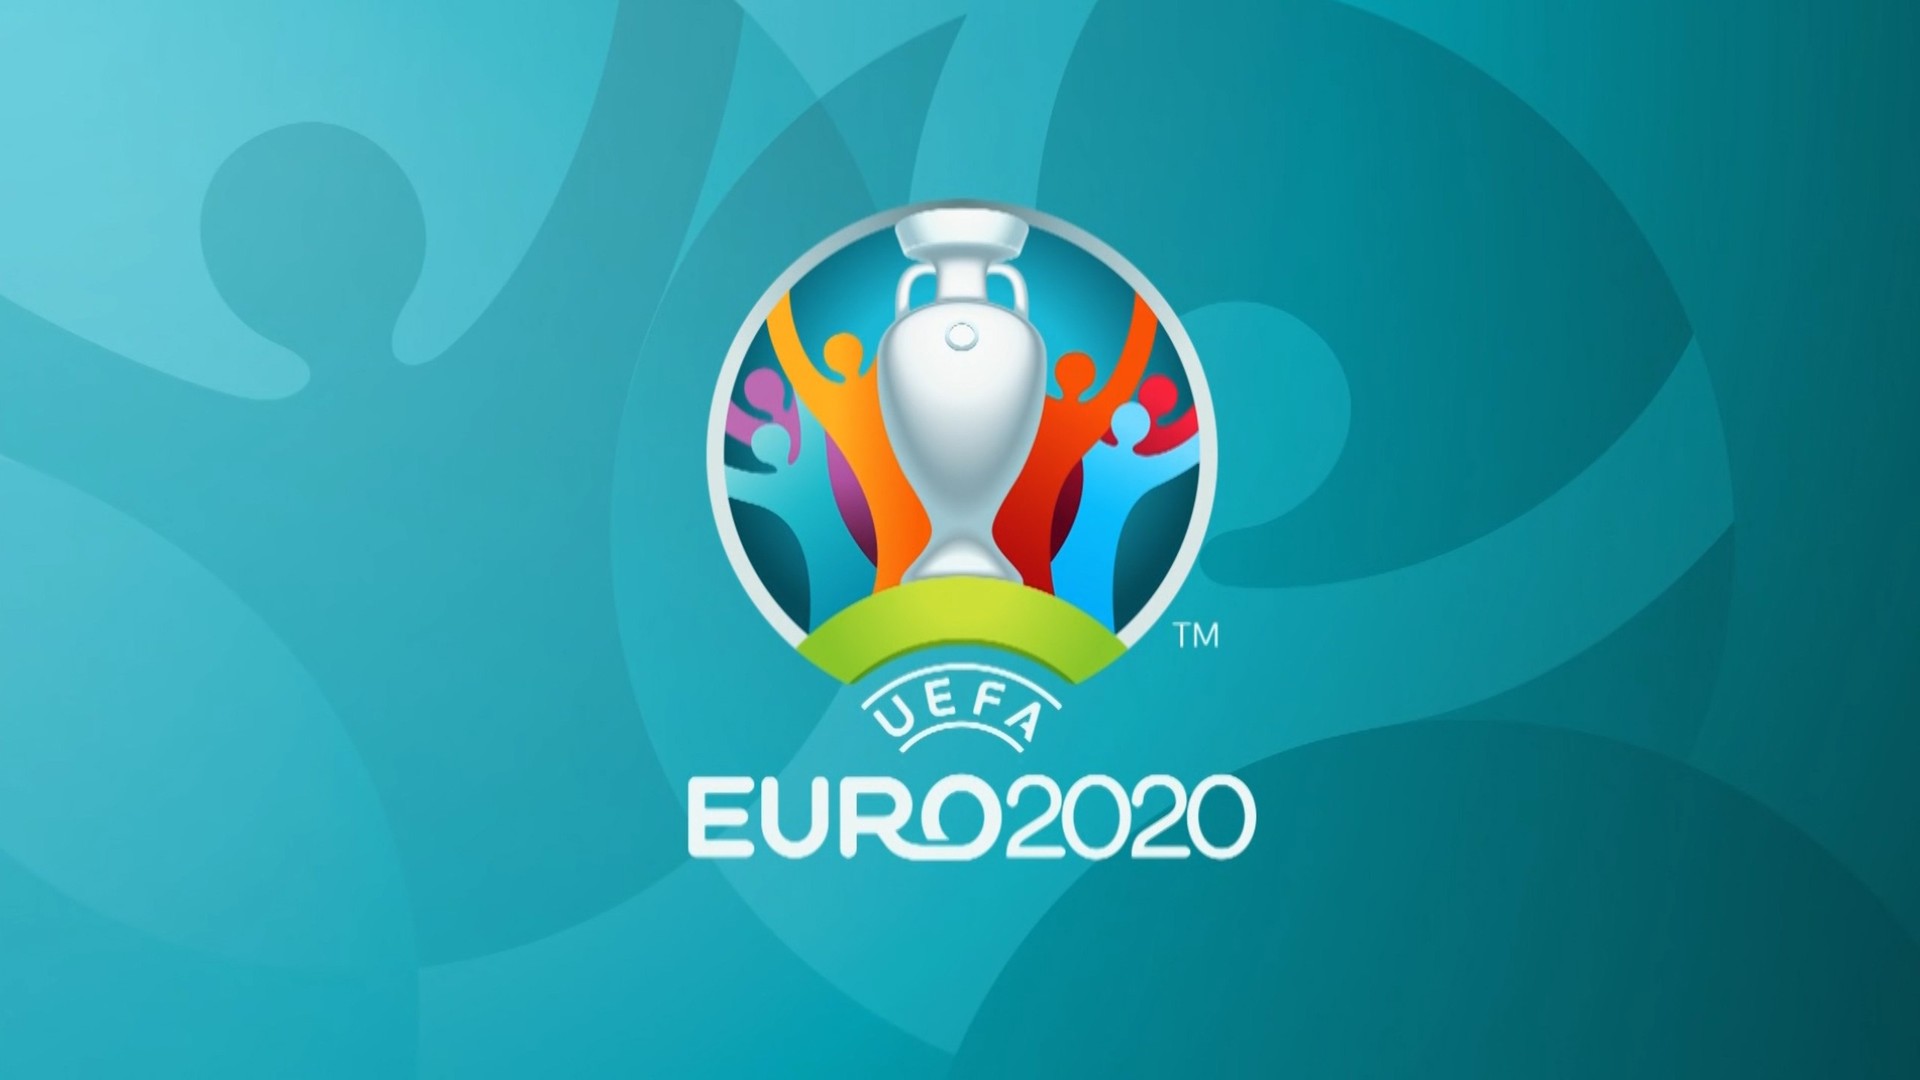 Vazhdon EURO2020, sot zhvillohen tri sfida interesante